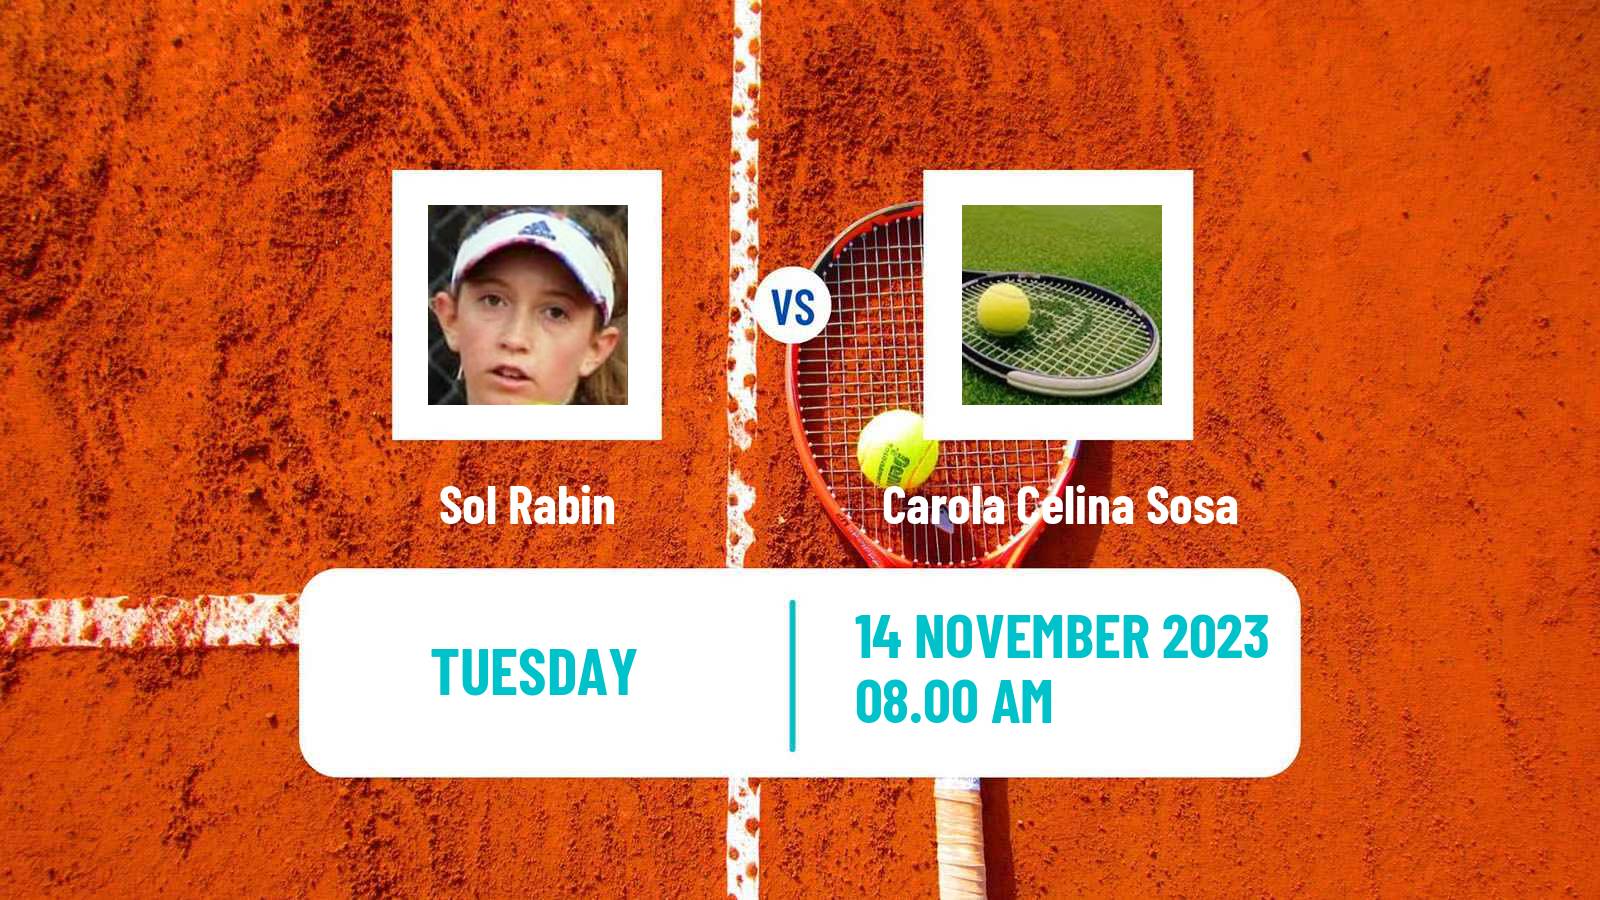 Tennis ITF W15 Buenos Aires 2 Women 2023 Sol Rabin - Carola Celina Sosa